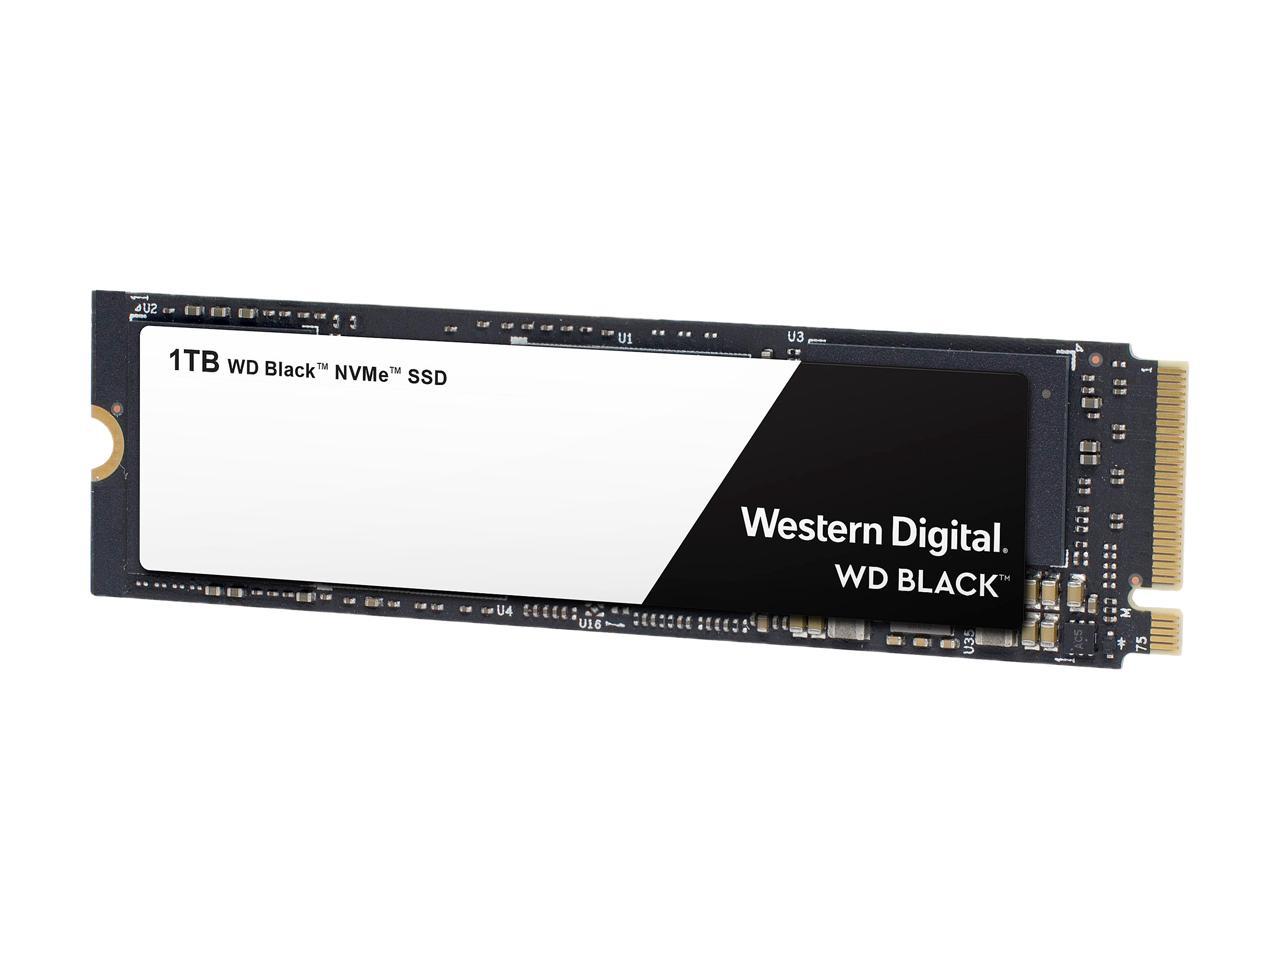 Wd Black Nvme M 2 2280 1tb Pci Express 3 0 X4 3d Nand Internal Solid State Drive Ssd Wds100t2x0c Newegg Com